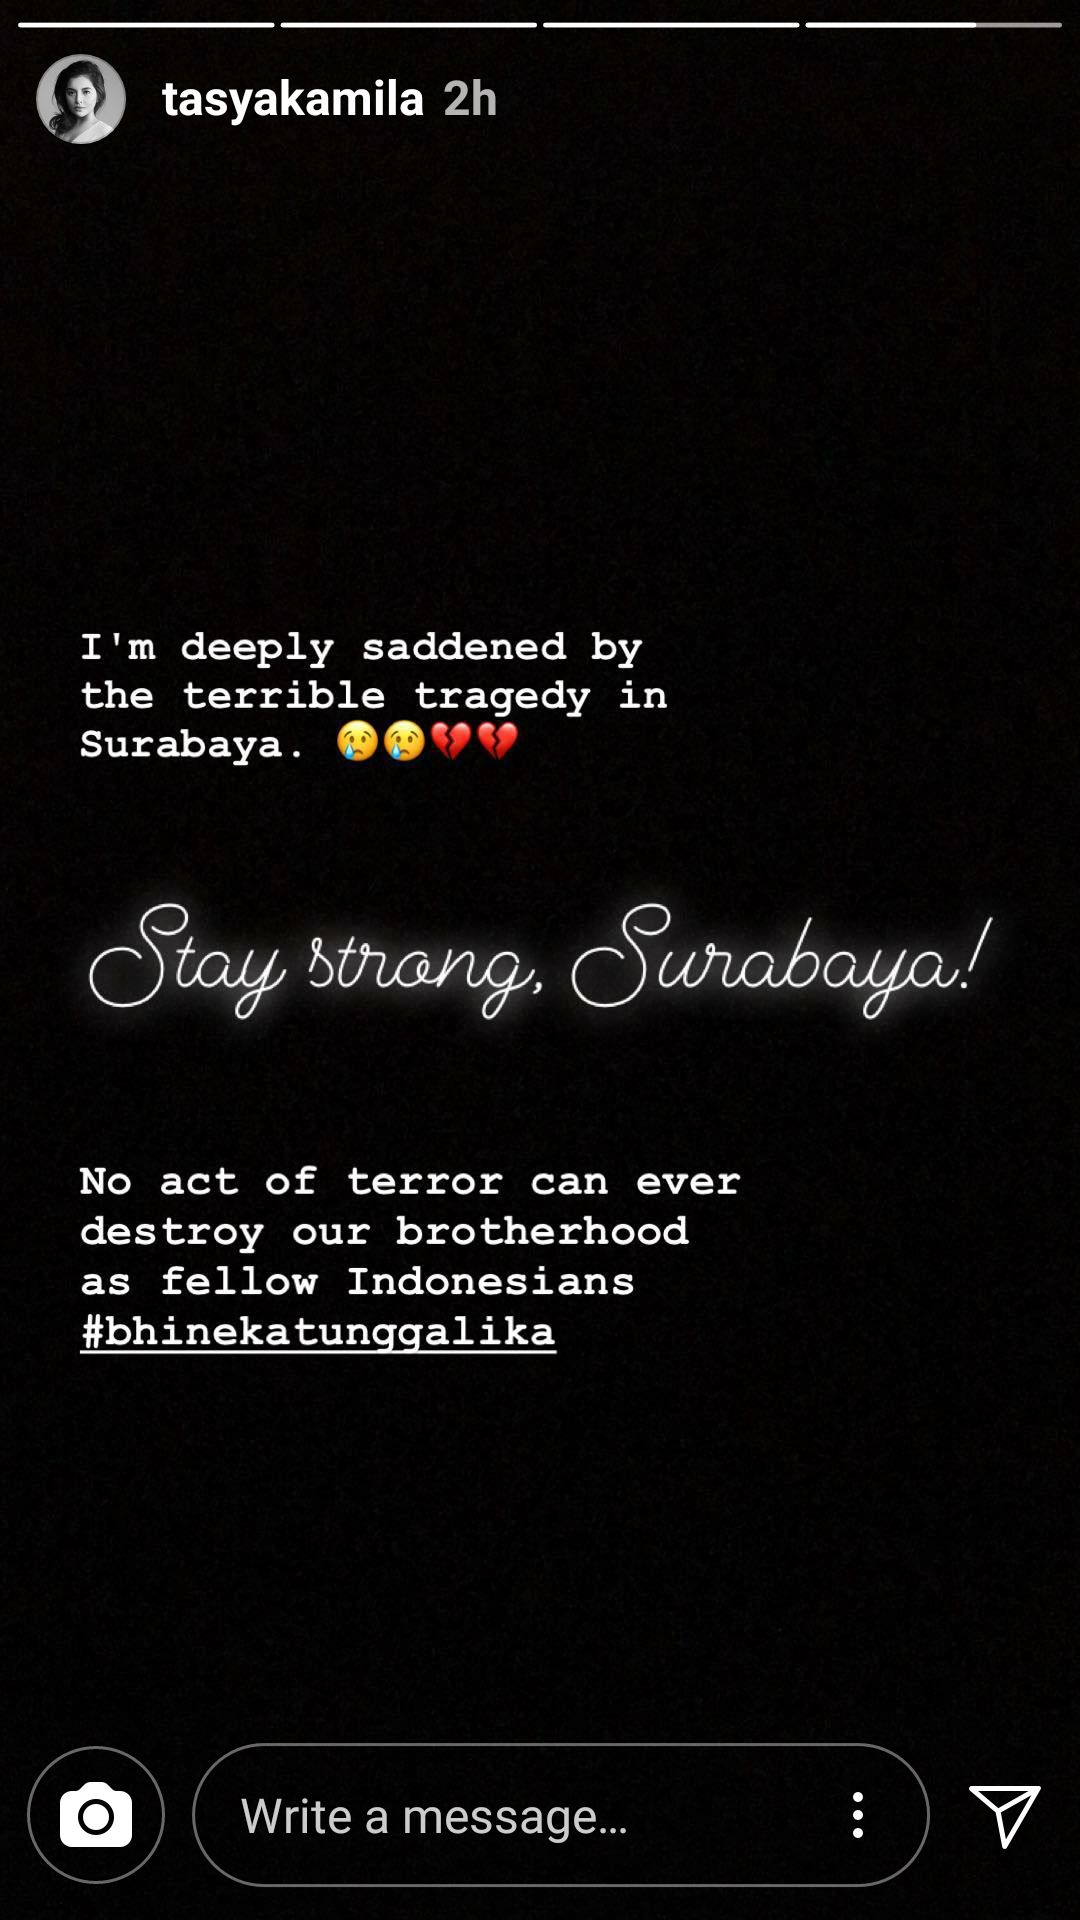 Tasya Kamila turut bersedih dengan tragedi bom Surabaya ia yakin teror tak akan bisa mengoyak persatuan bangsa